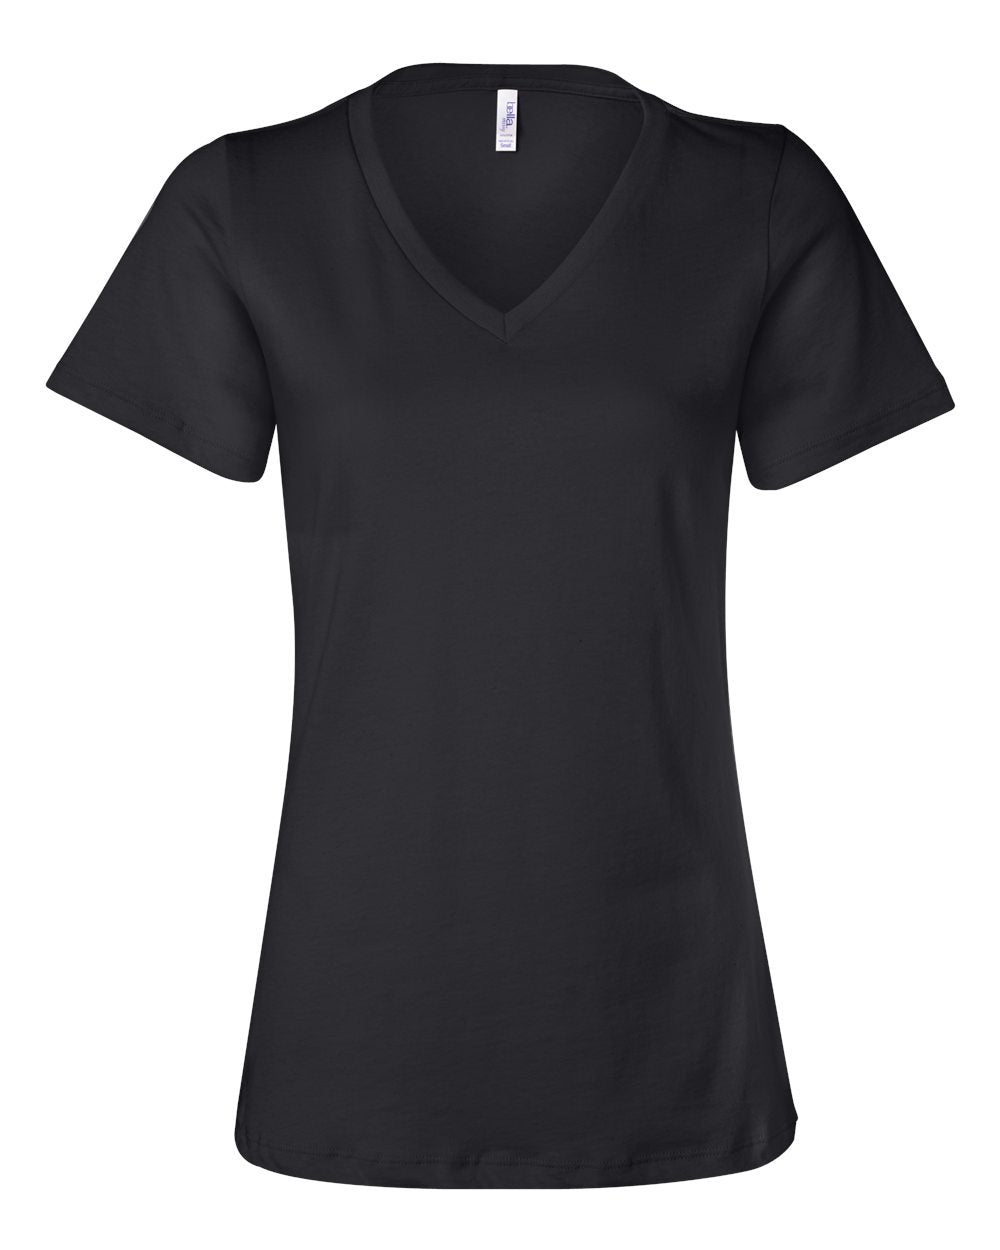 Goshen Football Design 8 V-neck T-Shirt